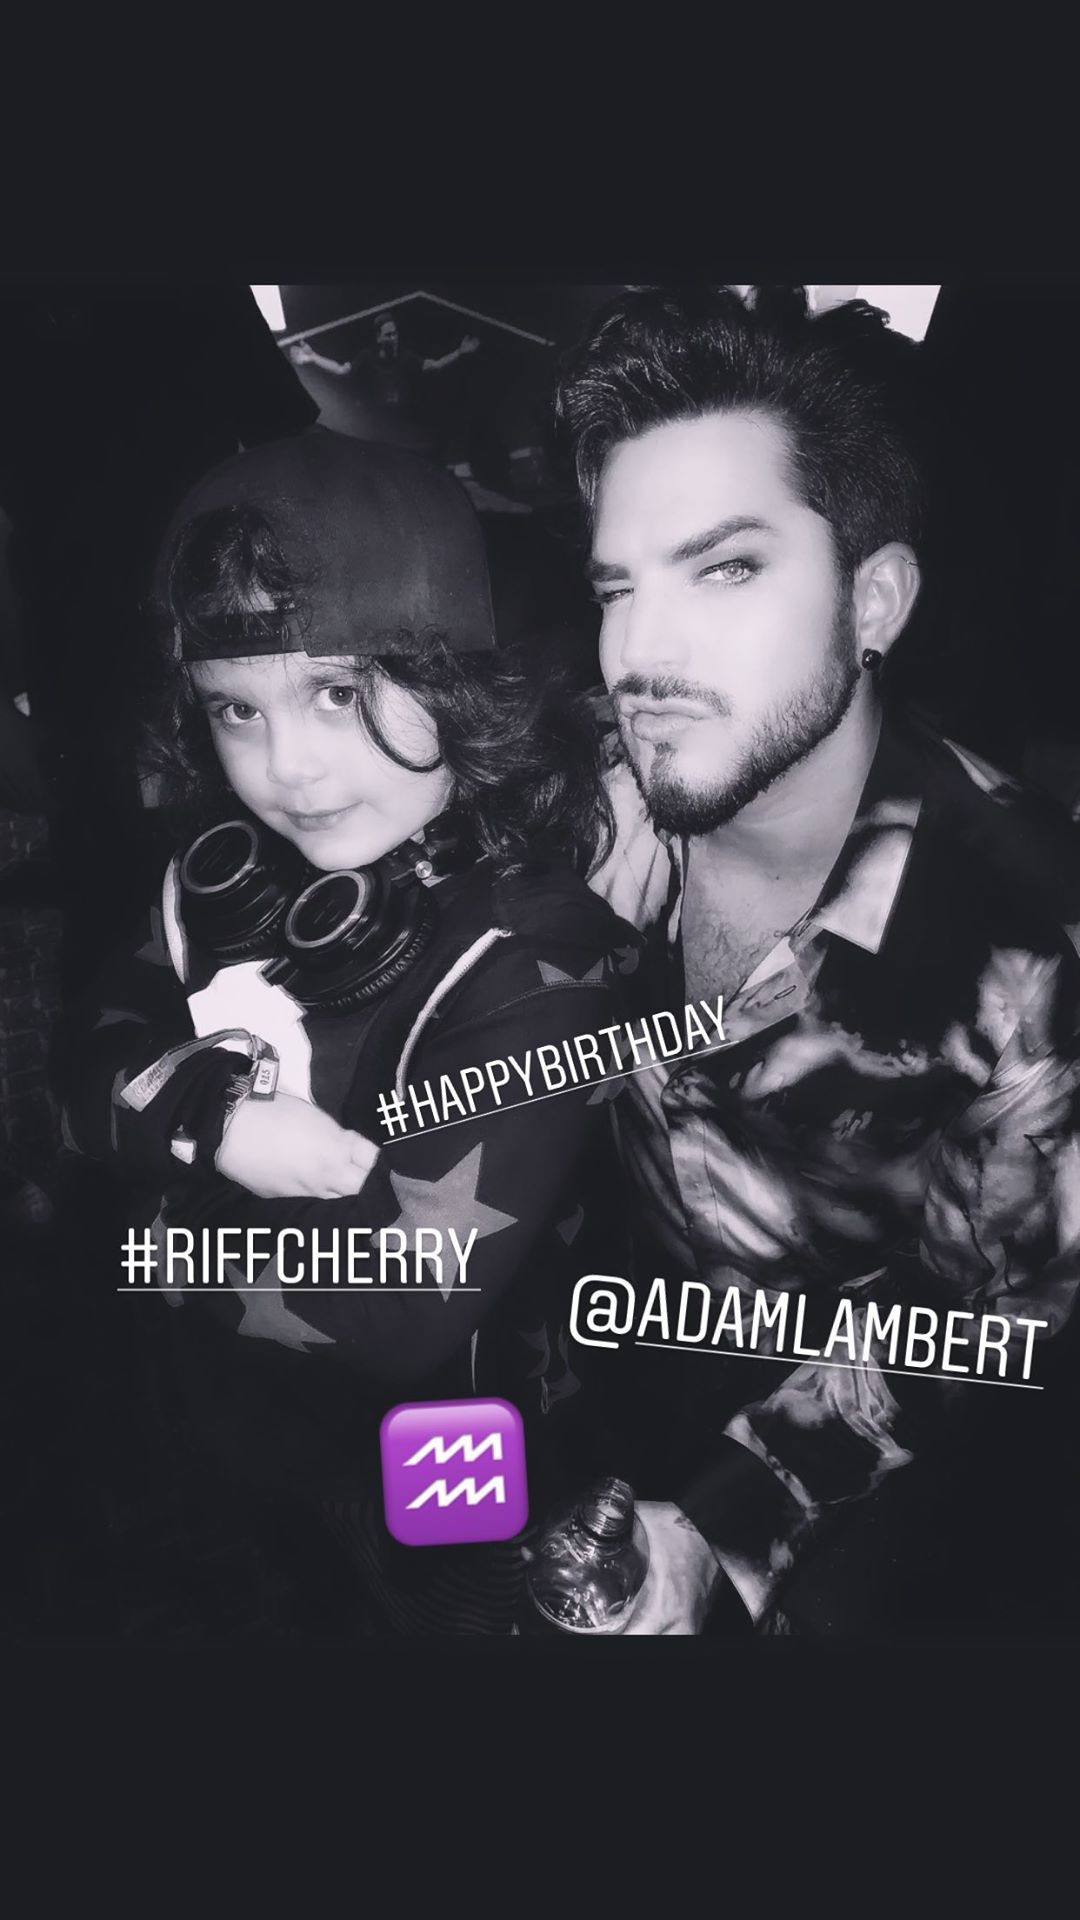 Leecherry ig story \happy birthday Riff Cherry and Adam Lambert\ 